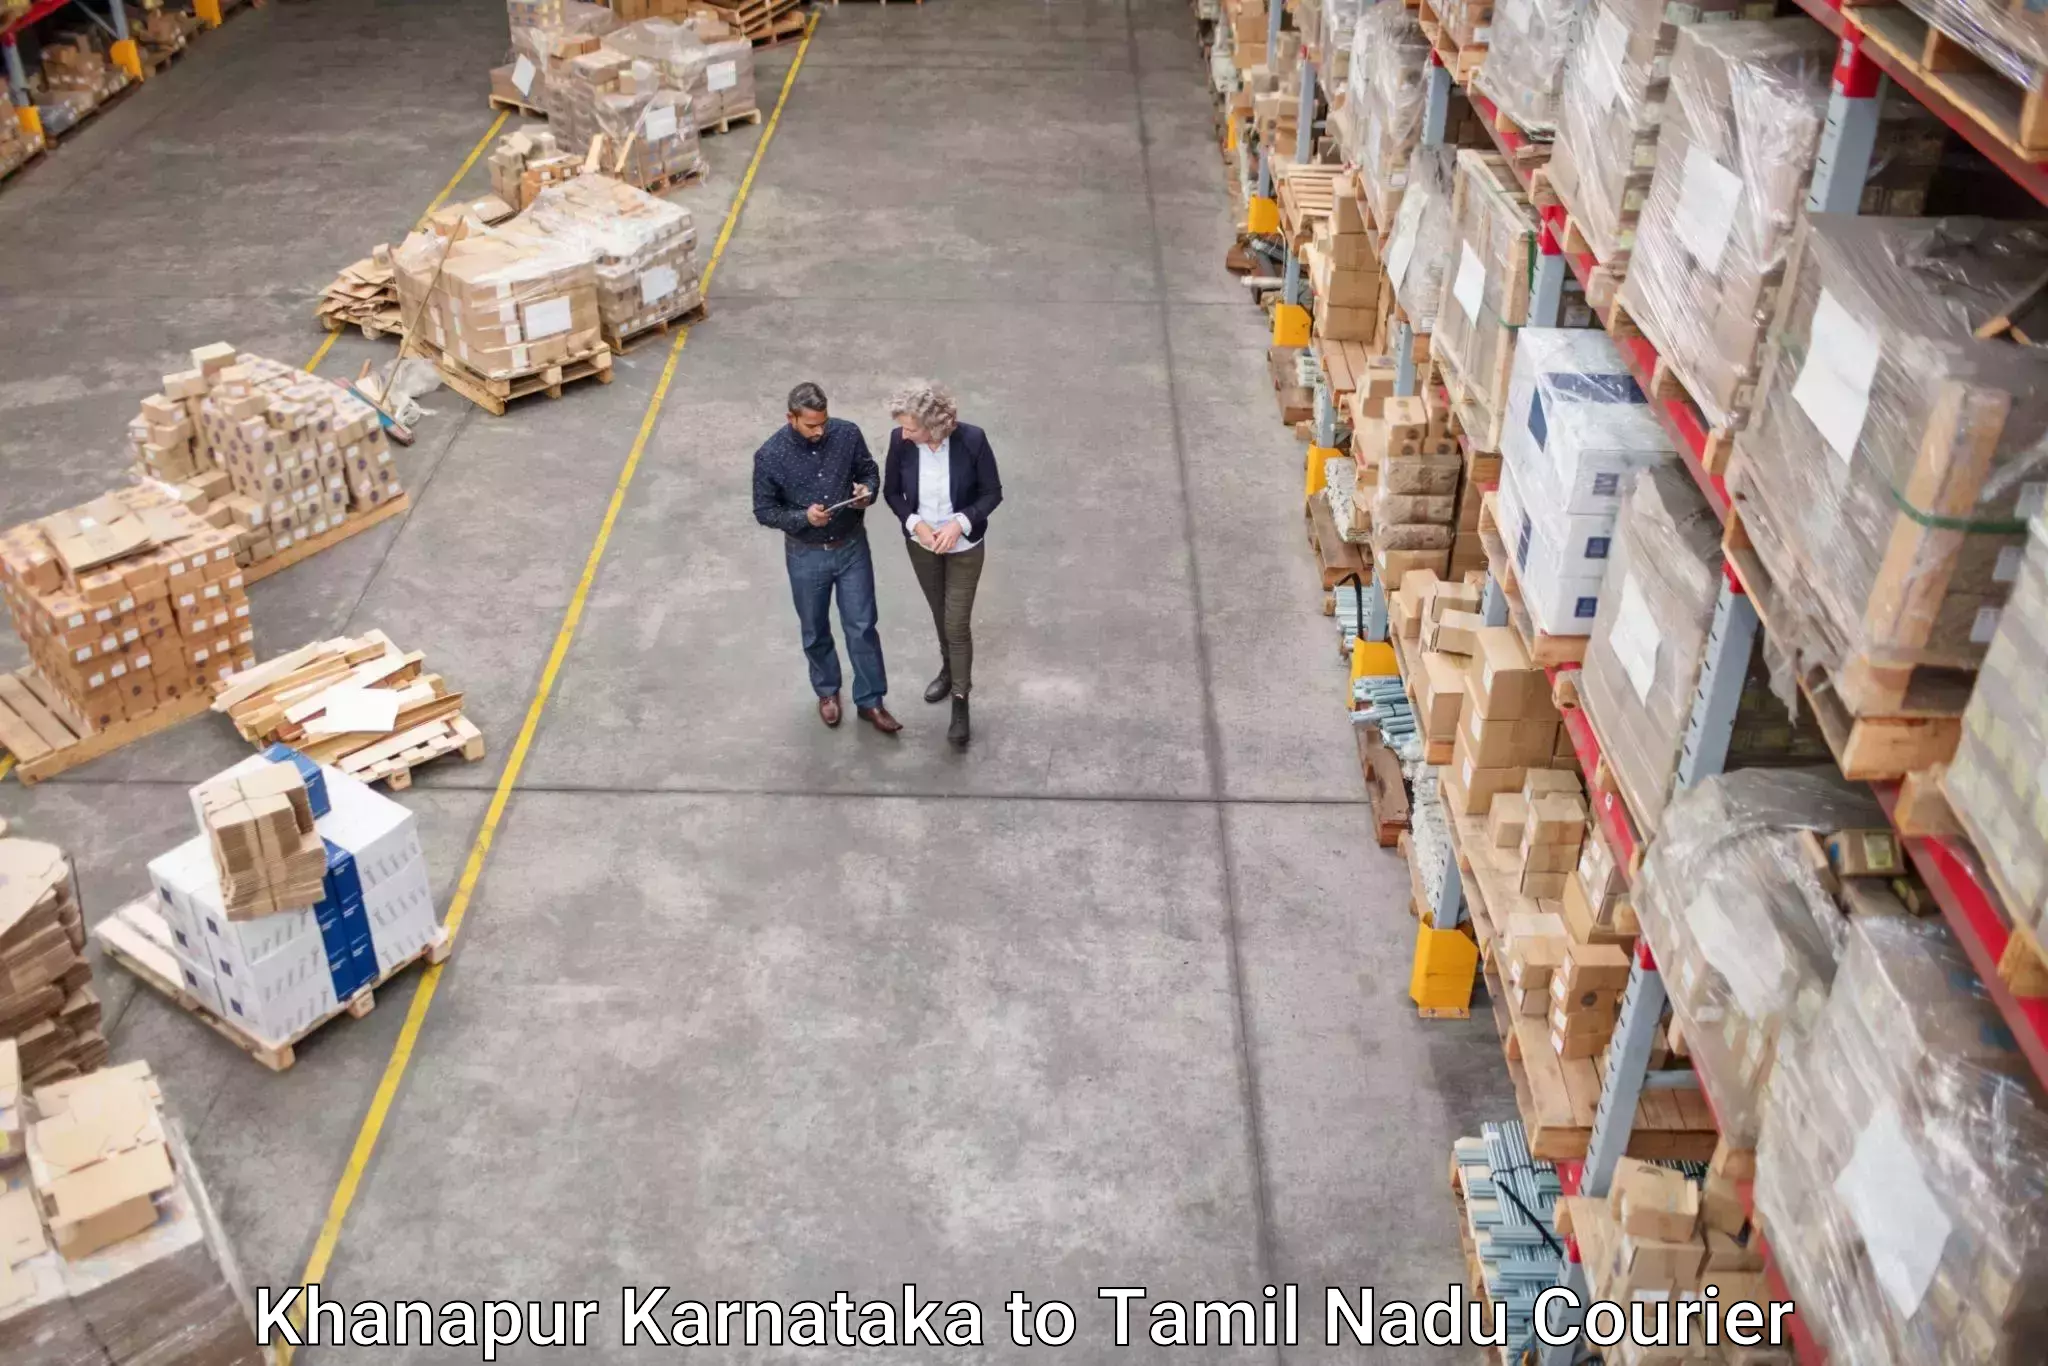 Modern parcel services Khanapur Karnataka to Gudiyattam